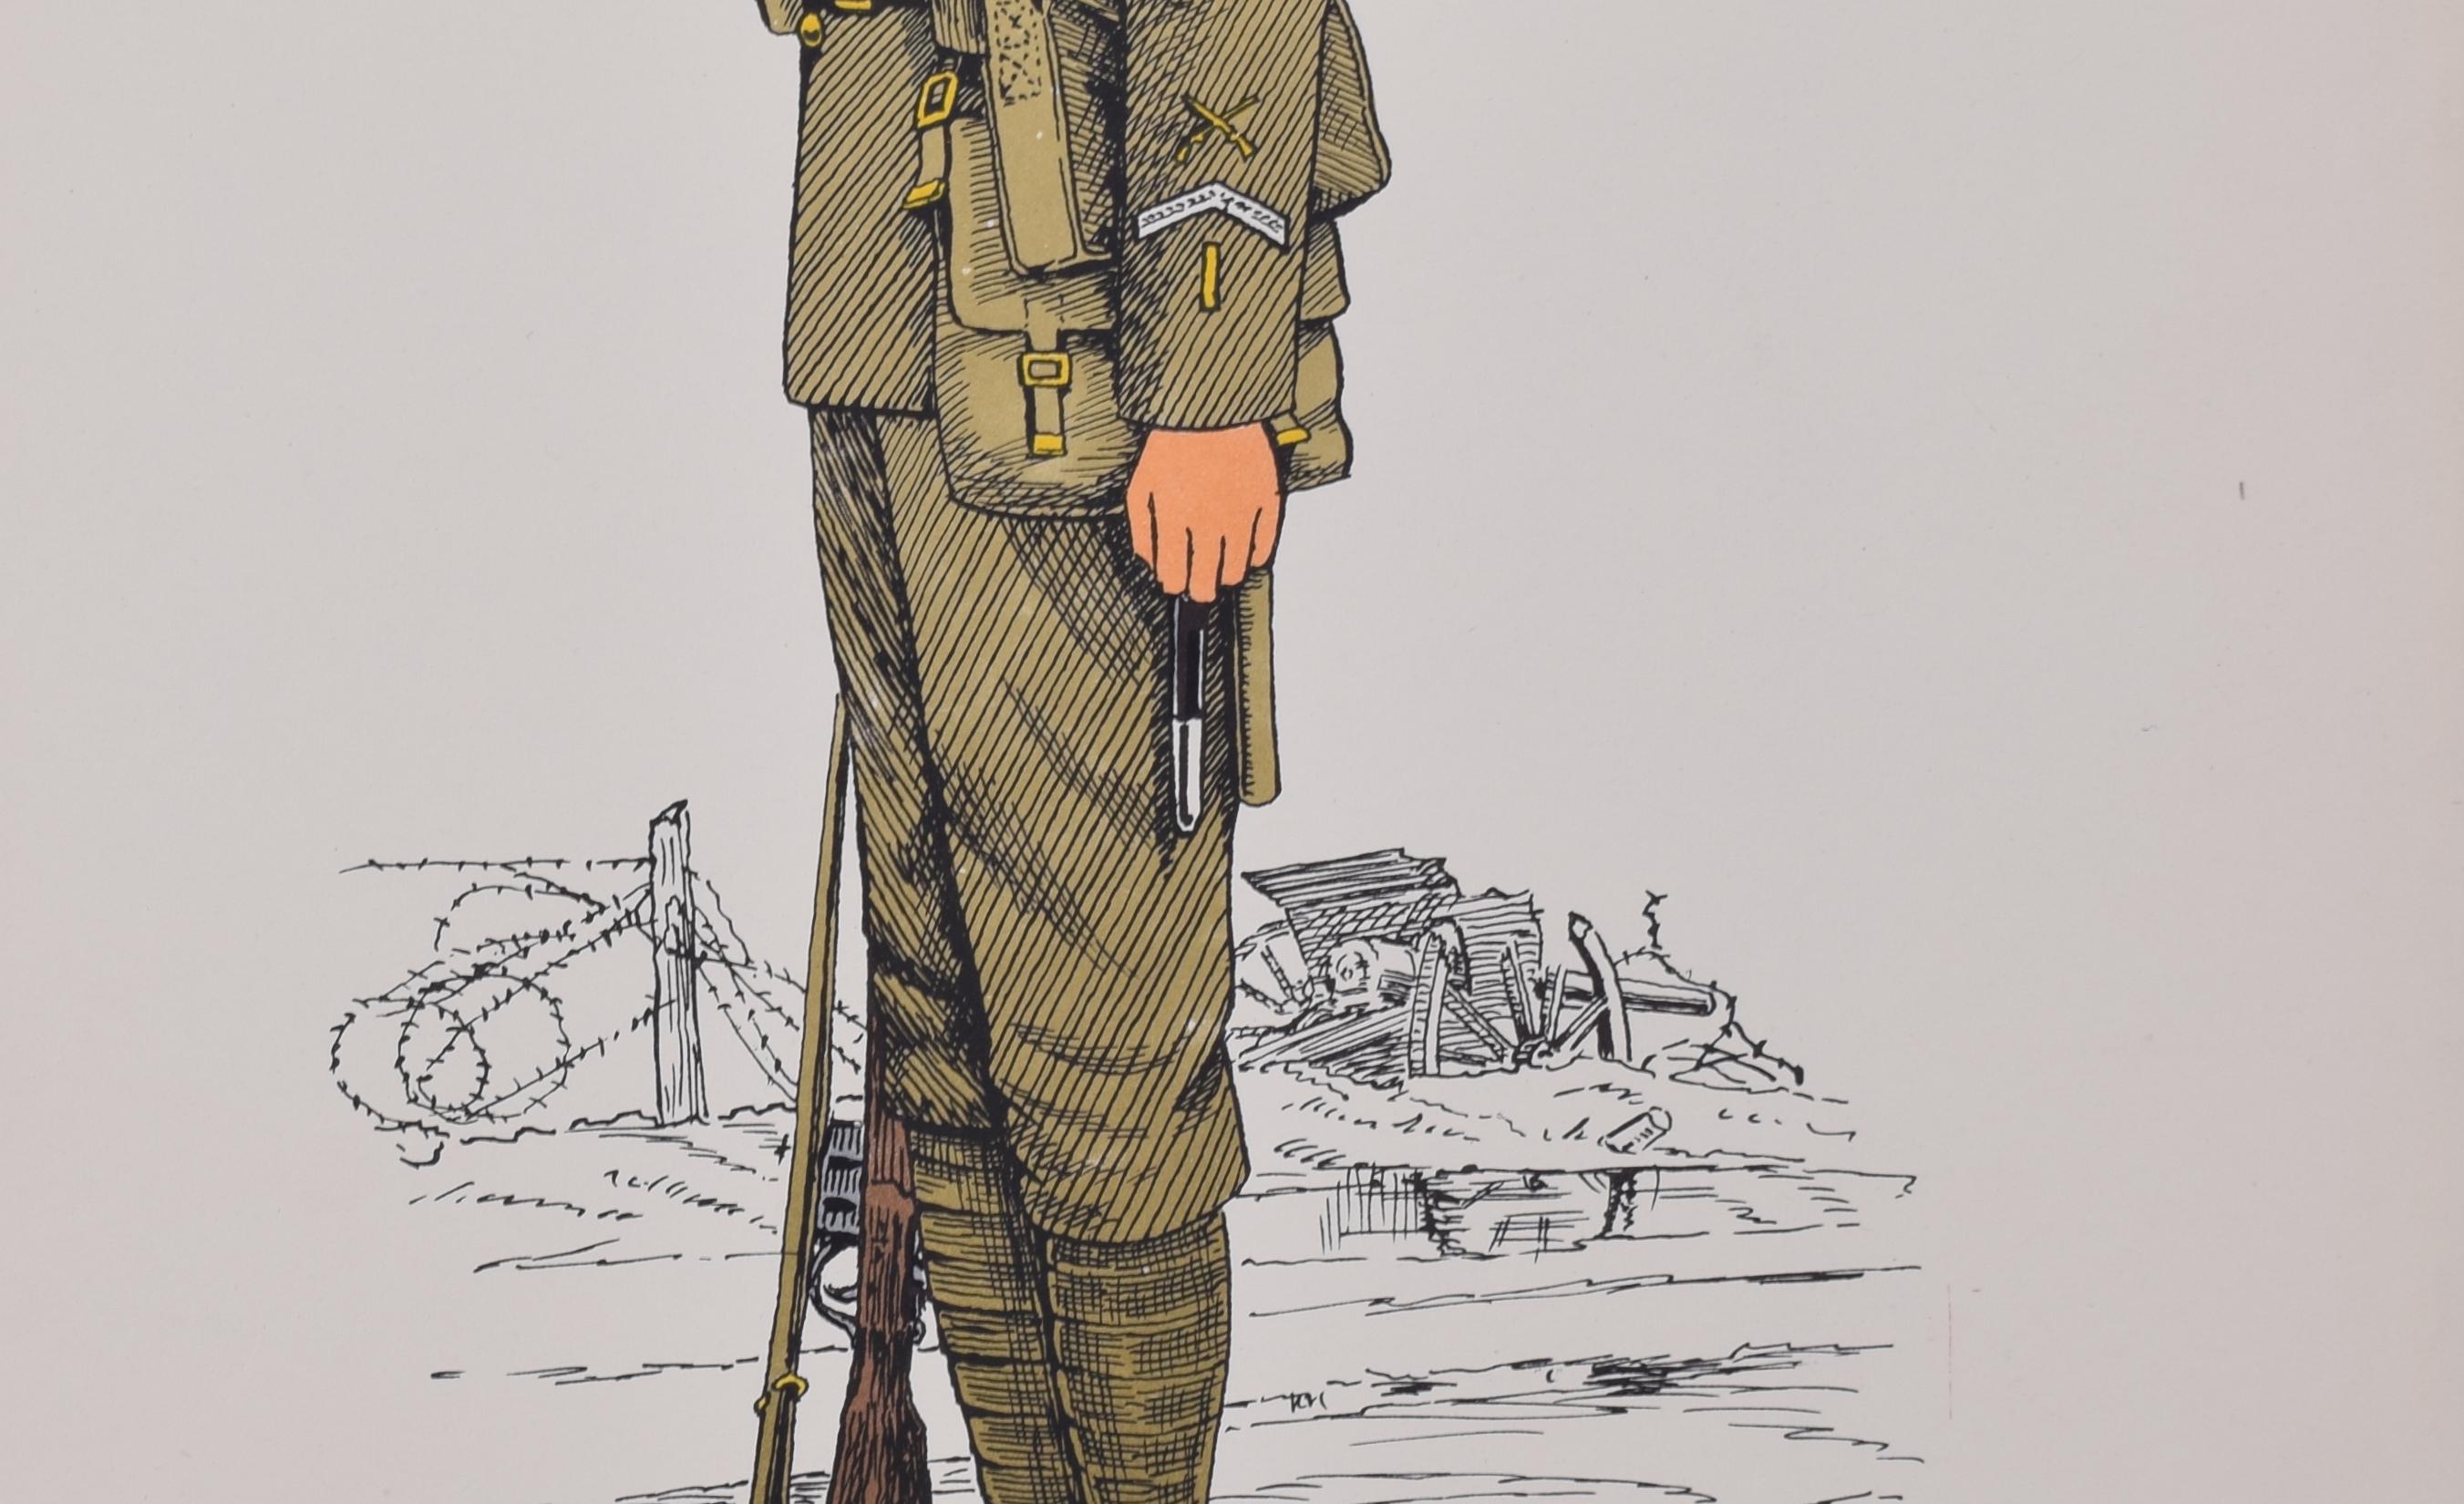 Schottengarde Gardist (Marschordnung) Uniform 1917
Lithographie
50 x 31 cm

Produziert für das Institute of Army Education. Gedruckt für das HM Stationery Office von I A Limited, Southall 51.

Diese Plakate wurden vom Institut für Armeeerziehung